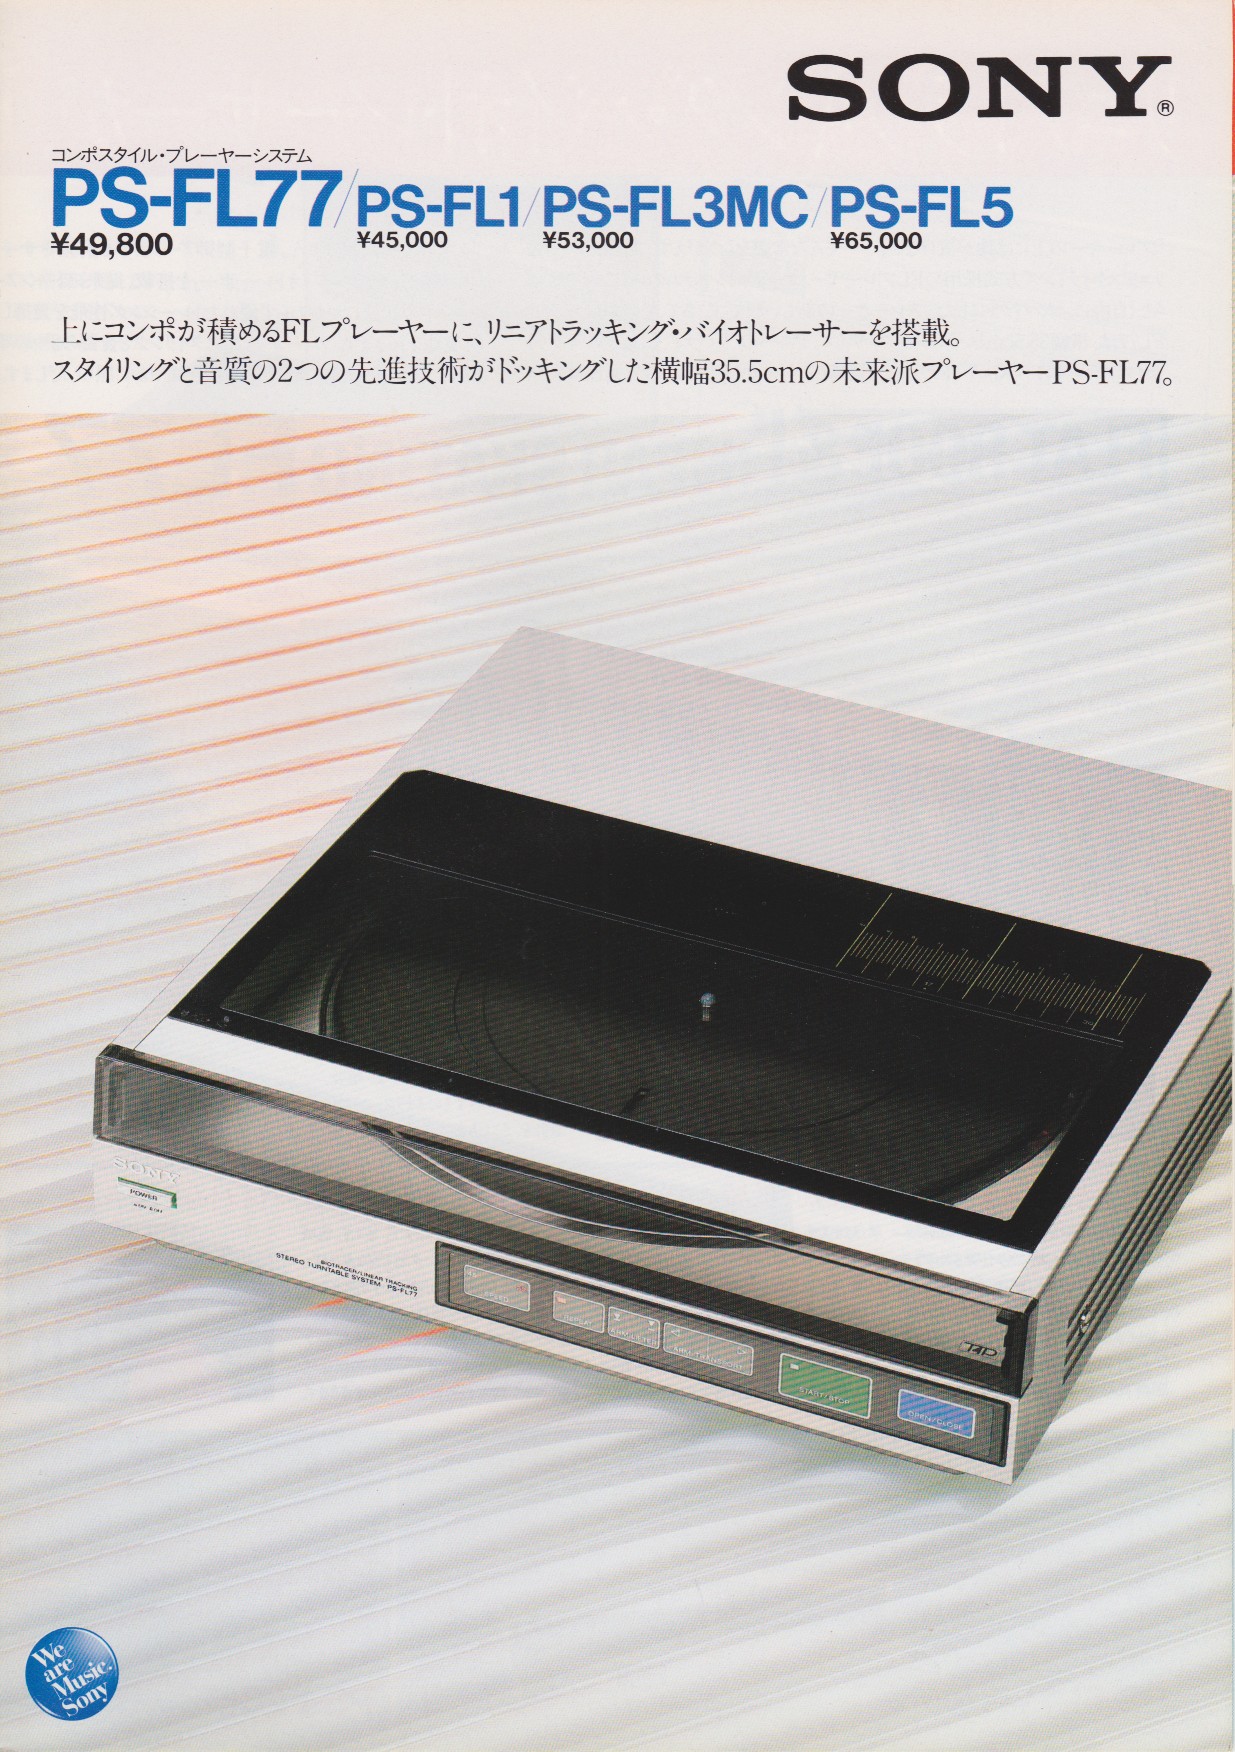 オーディオ機器 その他 PS-FL77 / PS-FL1 / PS-FL3MC / PS-FL5 1982年11月 | ソニー坊やと呼ば 